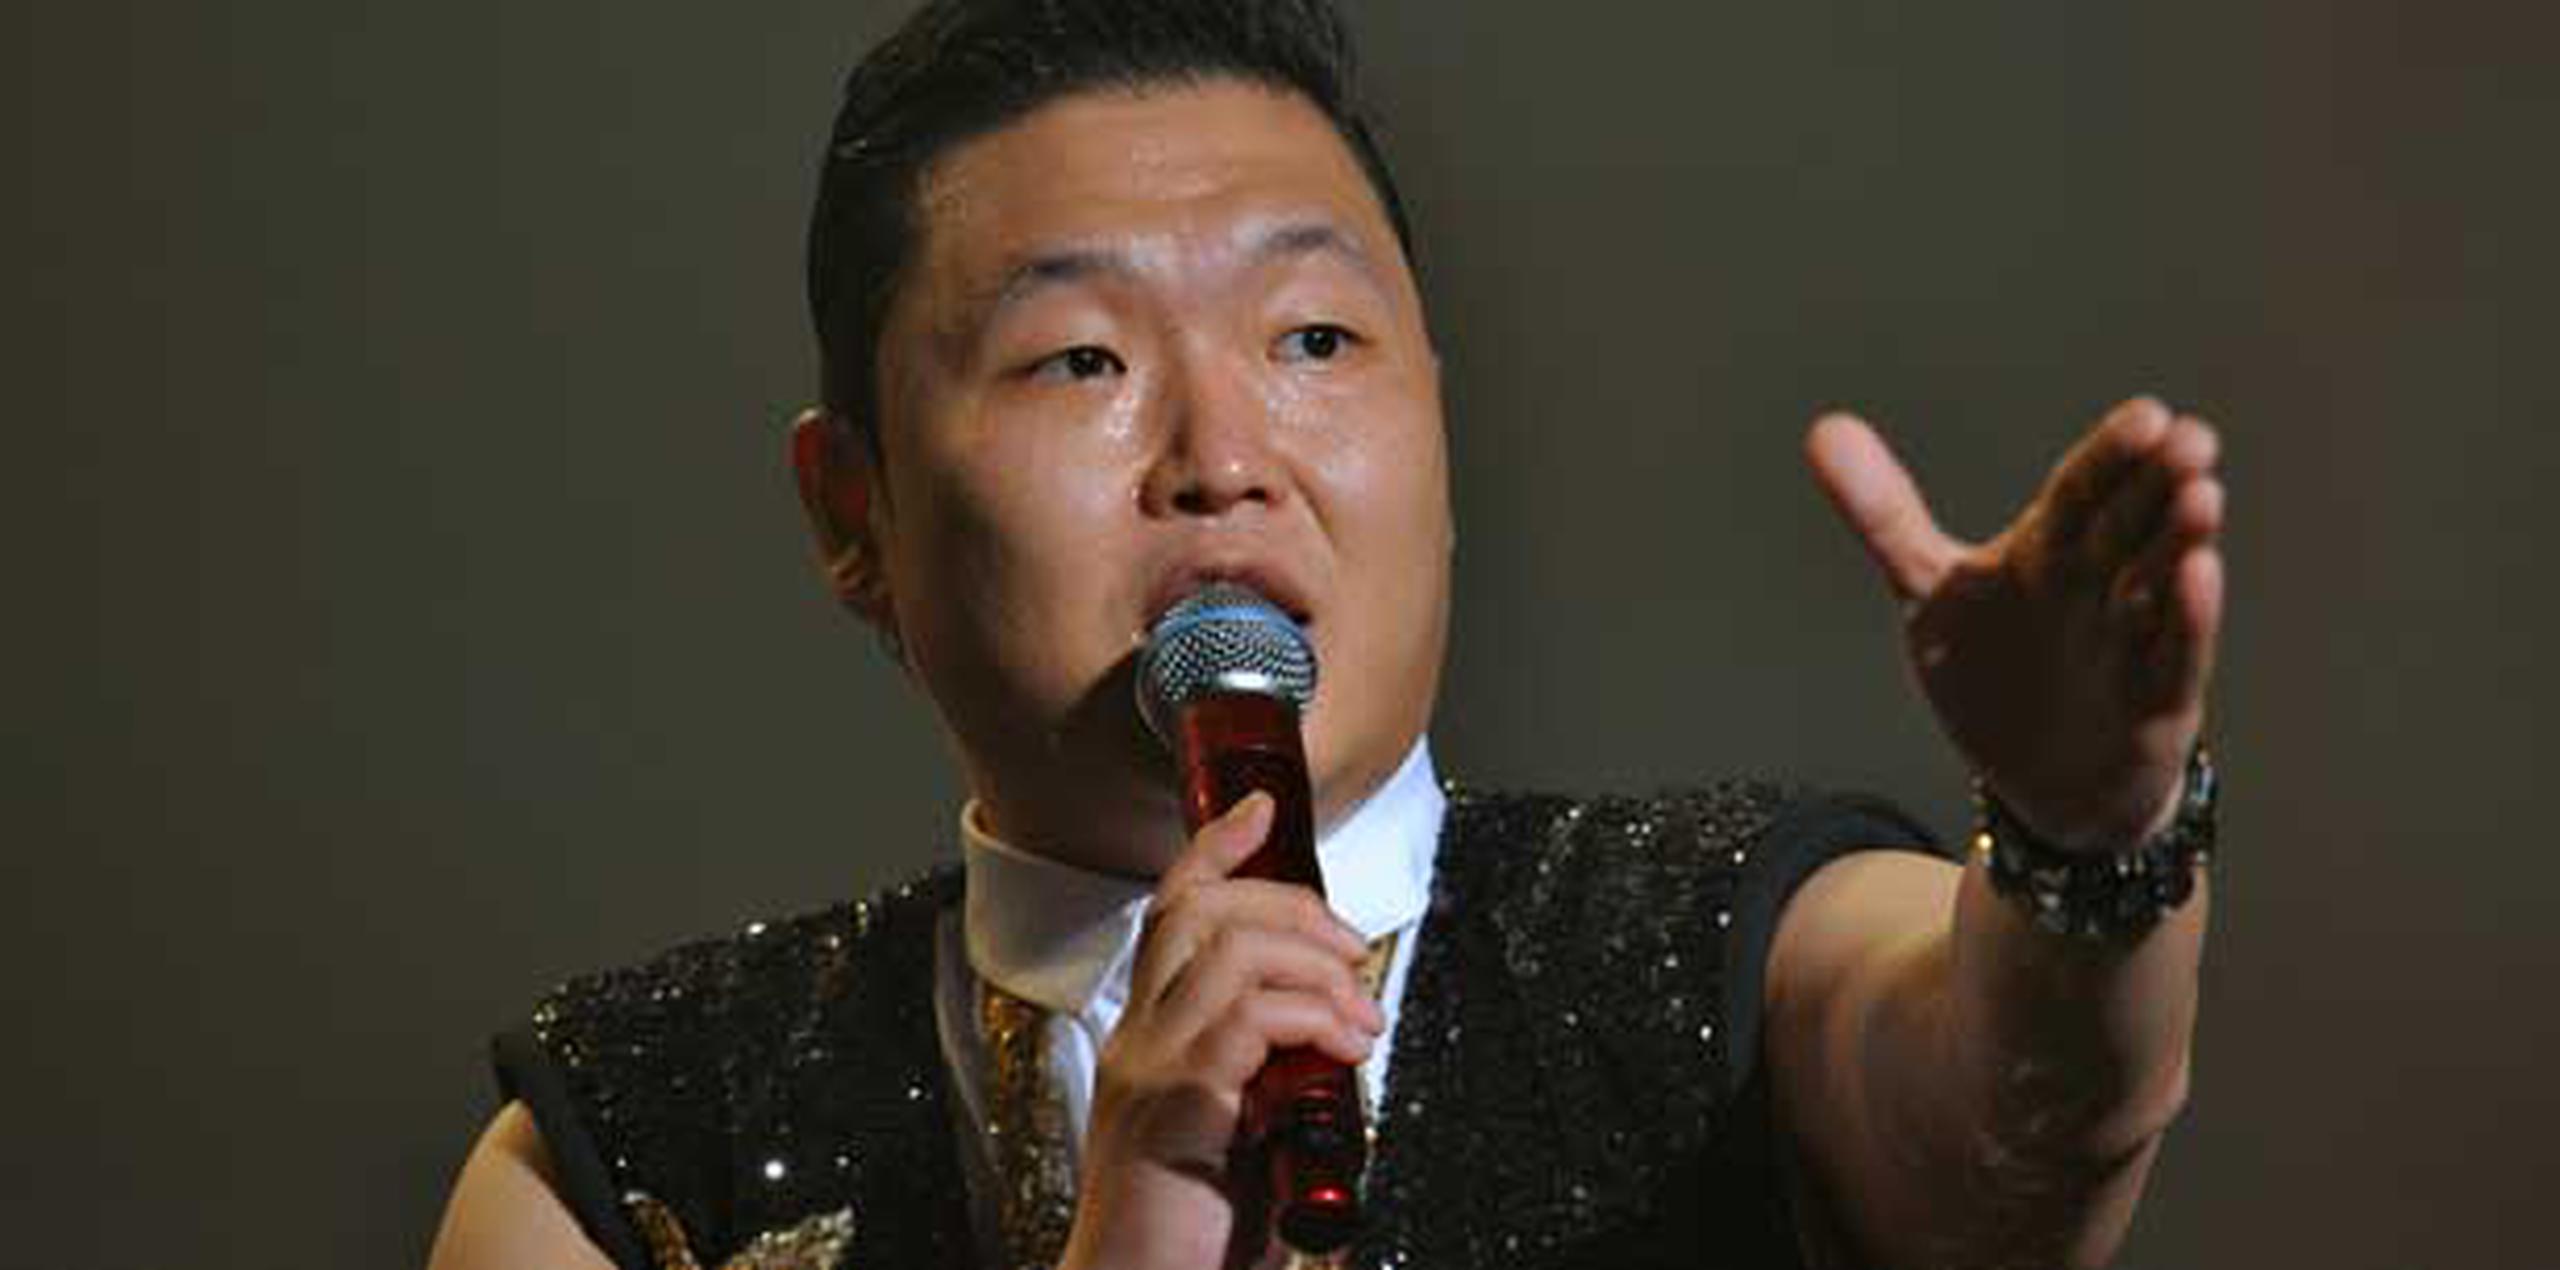 La nueva canción de Psy es una sátira sobre un hombre vulgar que se denomina a sí mismo un "gentleman". (AFP PHOTO / Archivo / Kim Jae-Hwan)